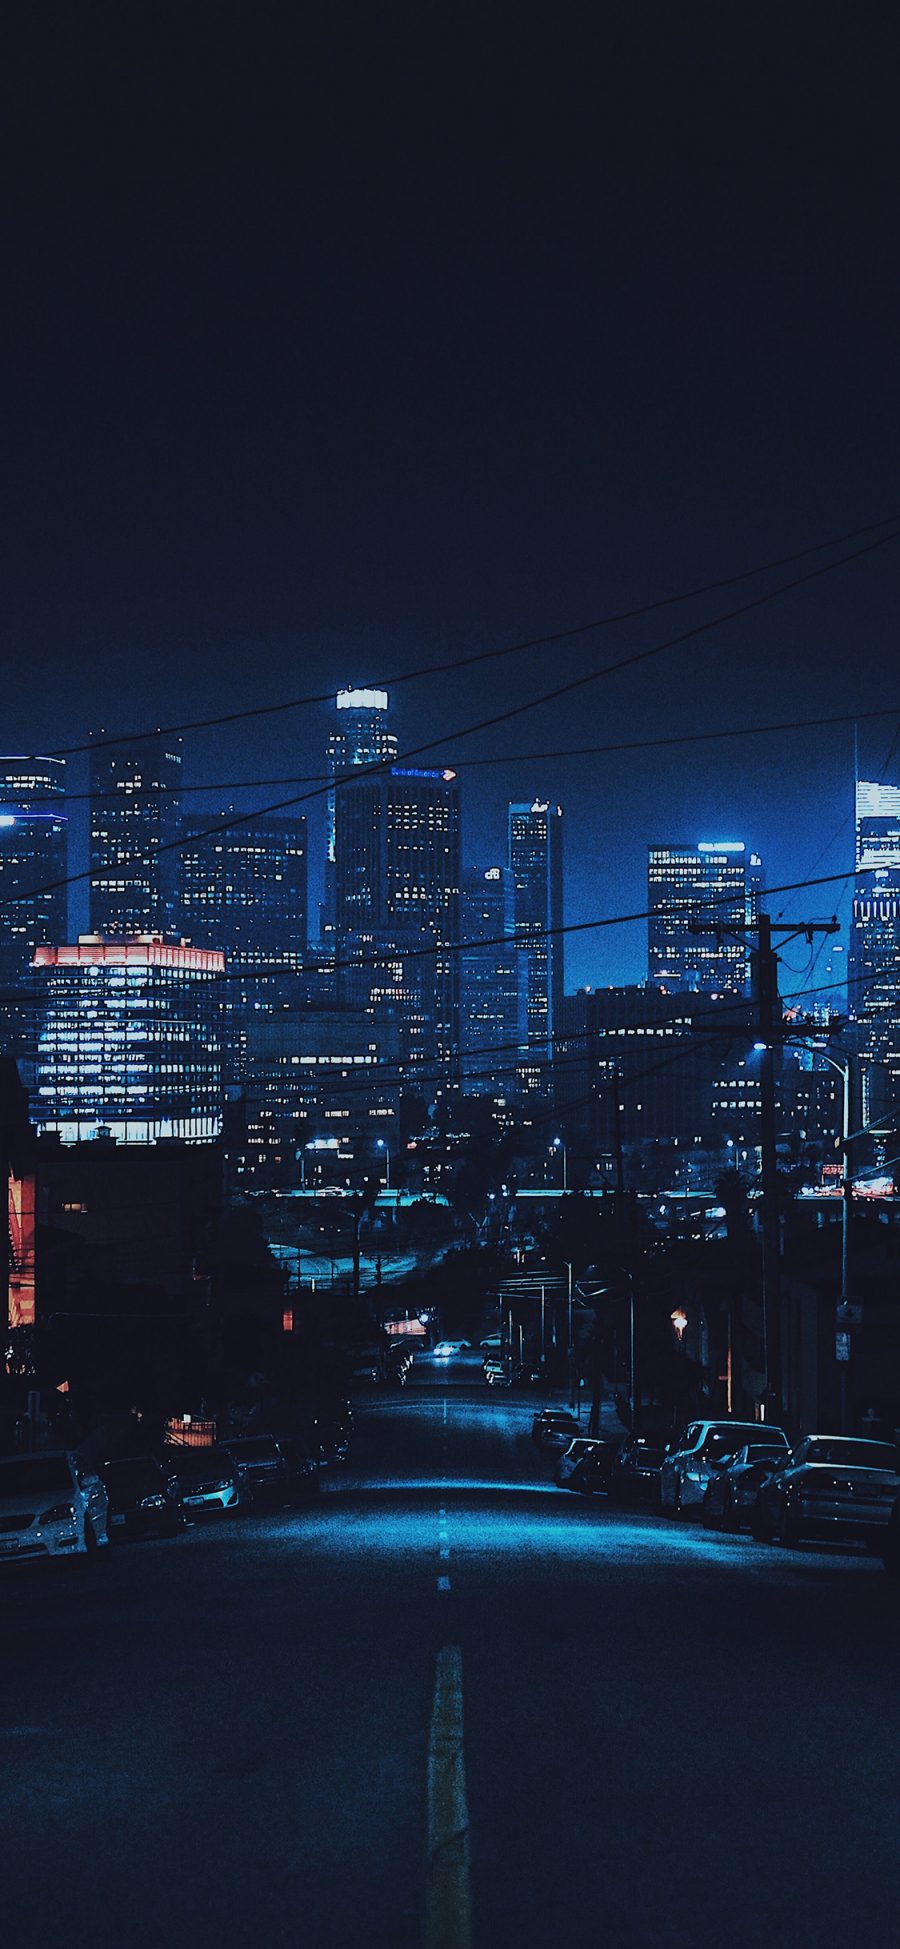 [2436×1125]城市夜景 黑夜 建筑 道路 苹果手机壁纸图片